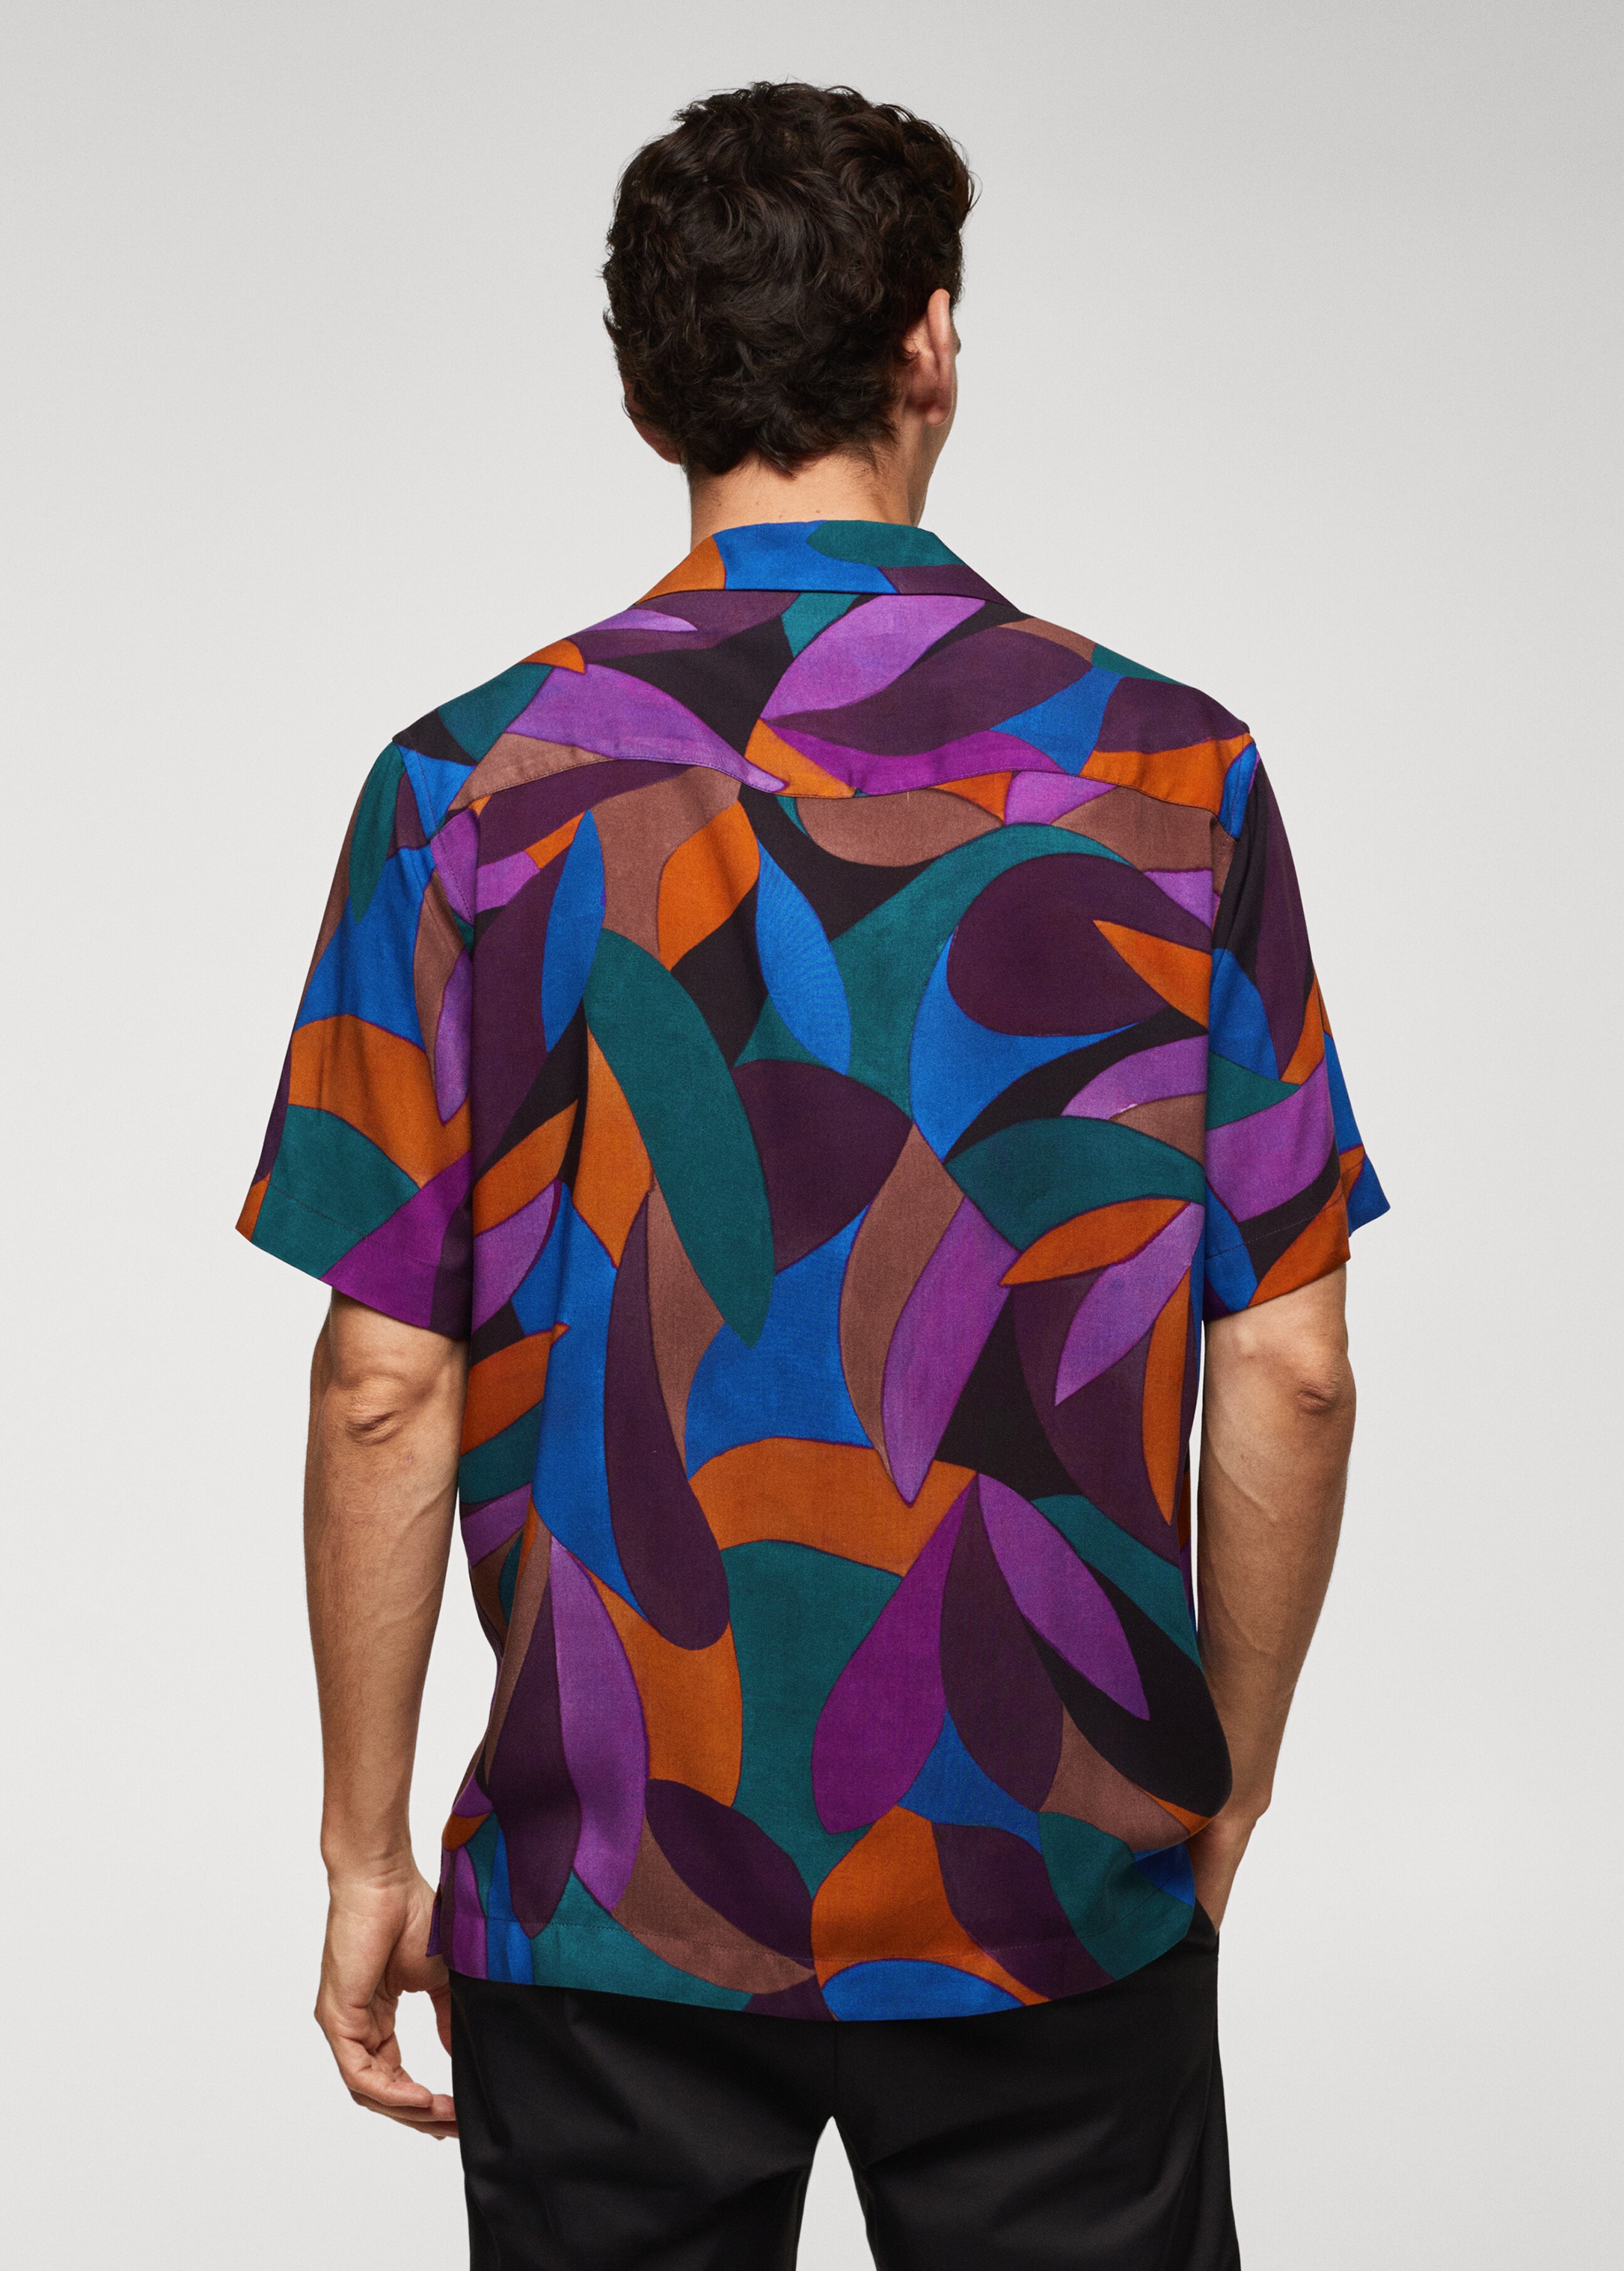 Bowlinghemd mit geometrischem Muster - Rückseite des Artikels